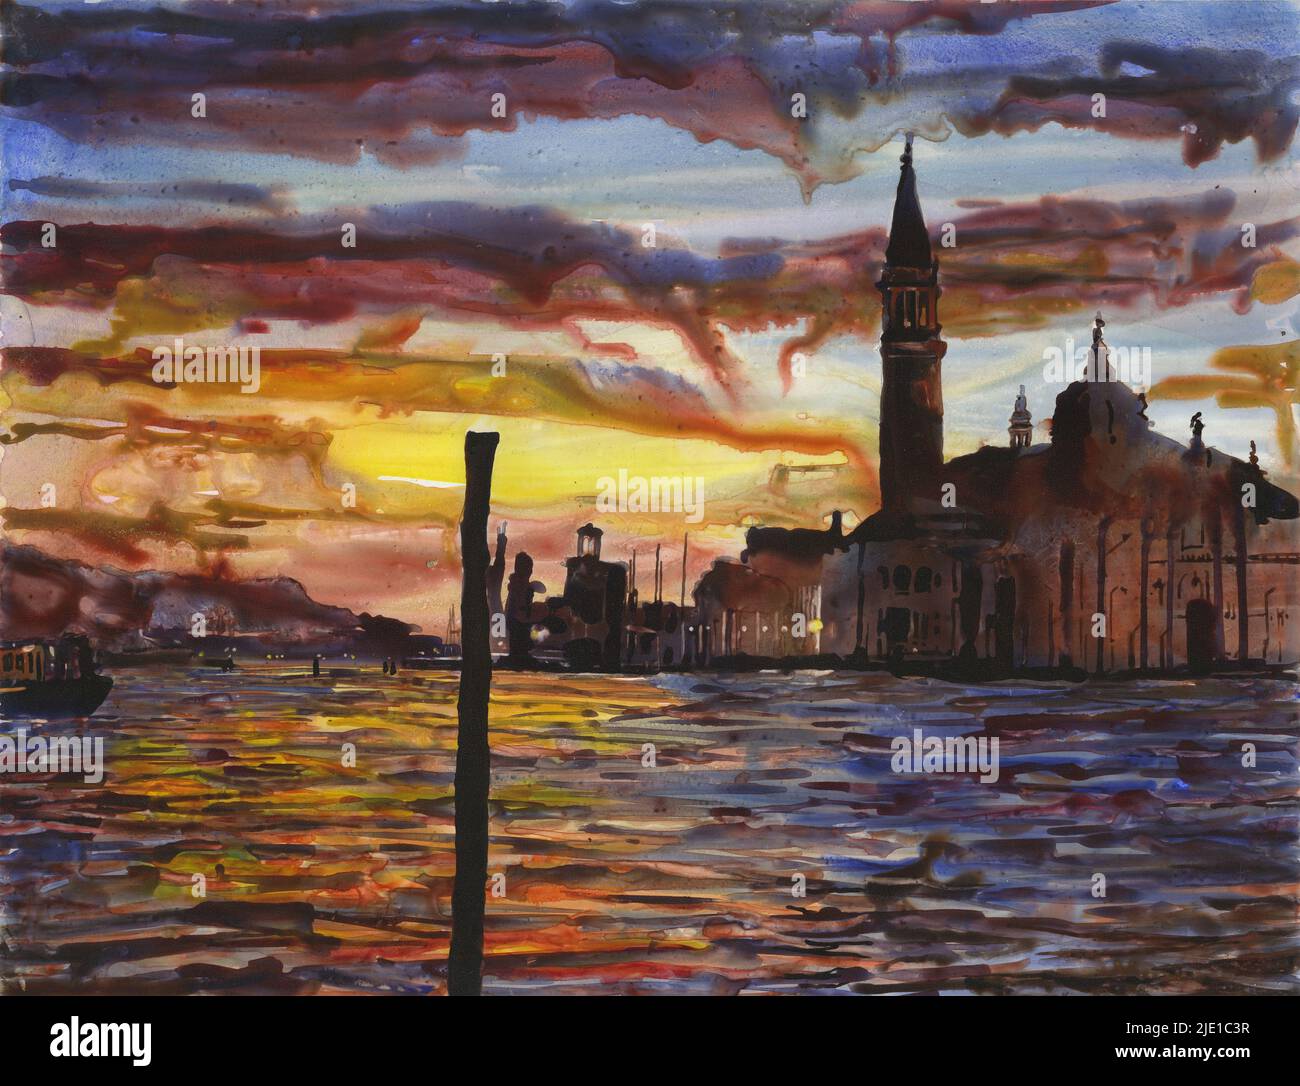 Venise, Italie peinture au coucher du soleil. Aquarelle église de Venise œuvres d'art du Grand Canal horizon de Venise (imprimé) Banque D'Images